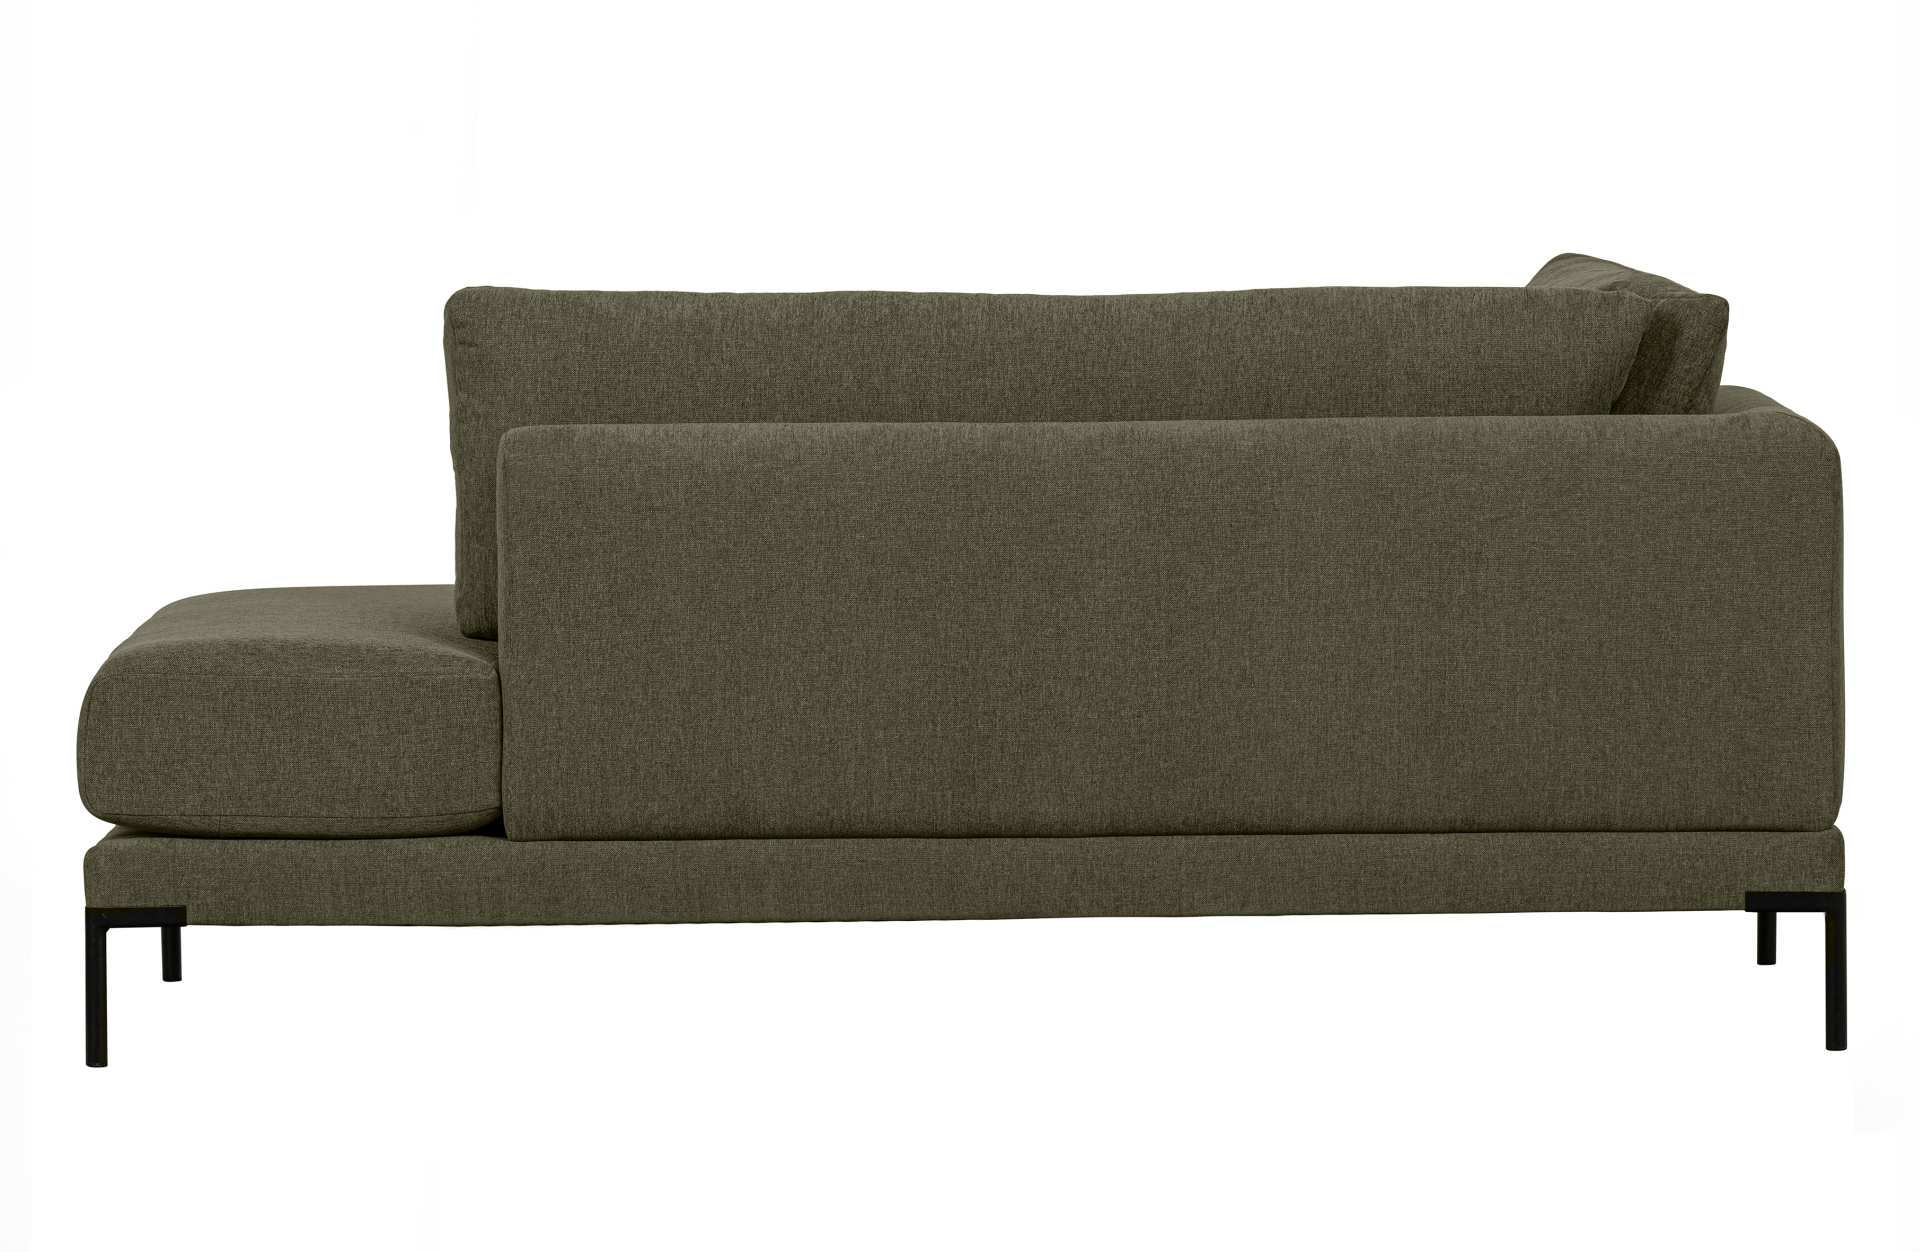 Das Modulsofa Couple Lounge überzeugt mit seinem modernen Design. Das Lounge Element mit der Ausführung Rechts wurde aus Melange Stoff gefertigt, welcher einen einen grünen Farbton besitzen. Das Gestell ist aus Metall und hat eine schwarze Farbe. Das Elem